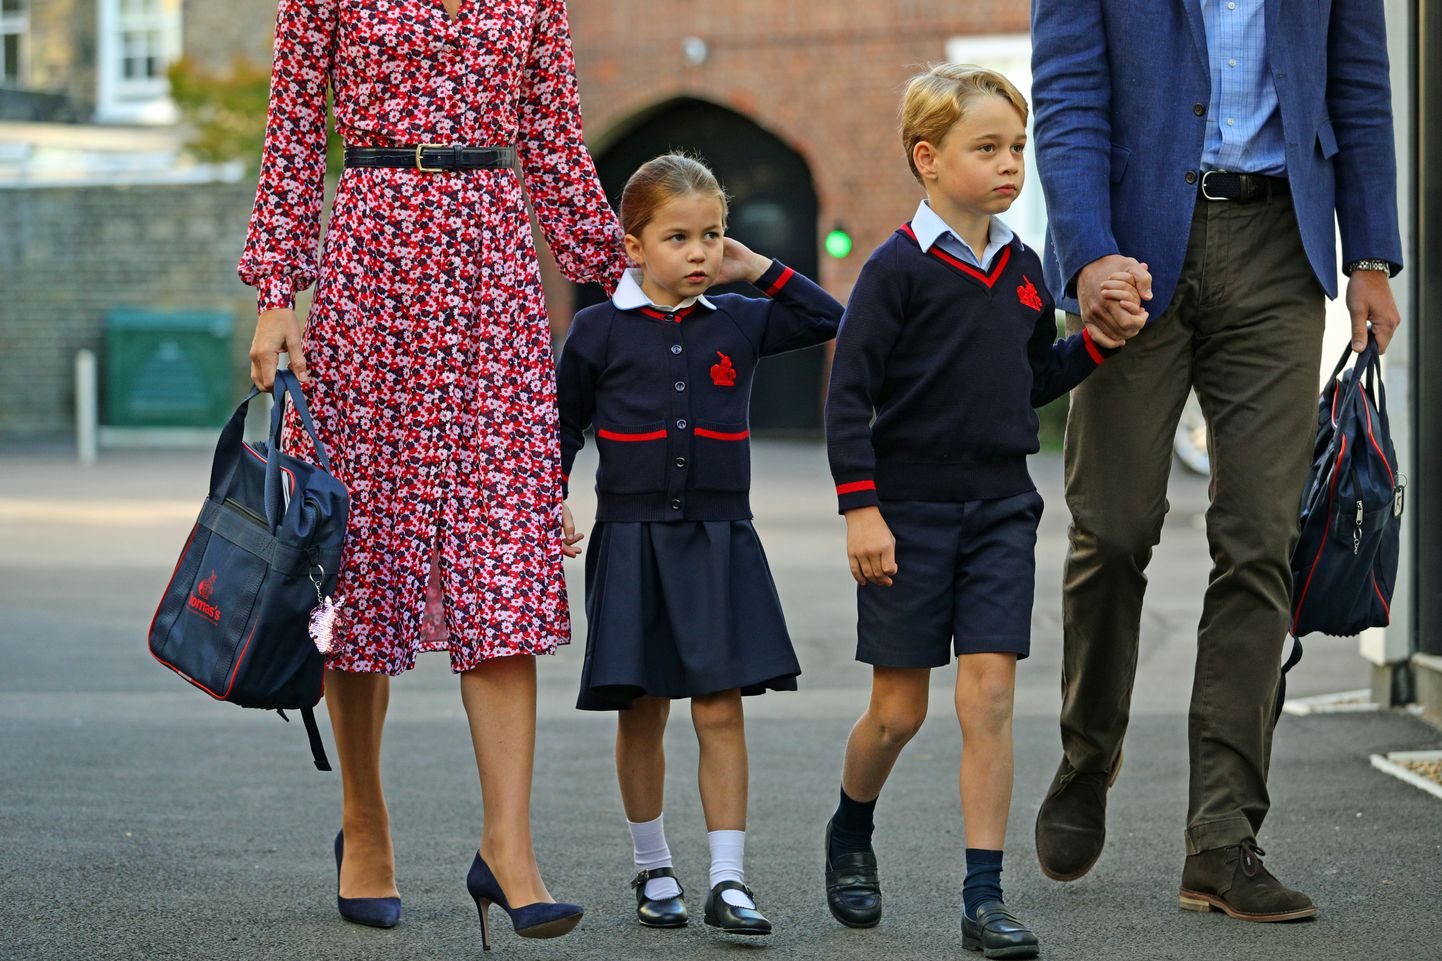 Princese Šarlote ierodas uz savu pirmo skolas dienu kopā ar savu brāli, princi Džordžu.